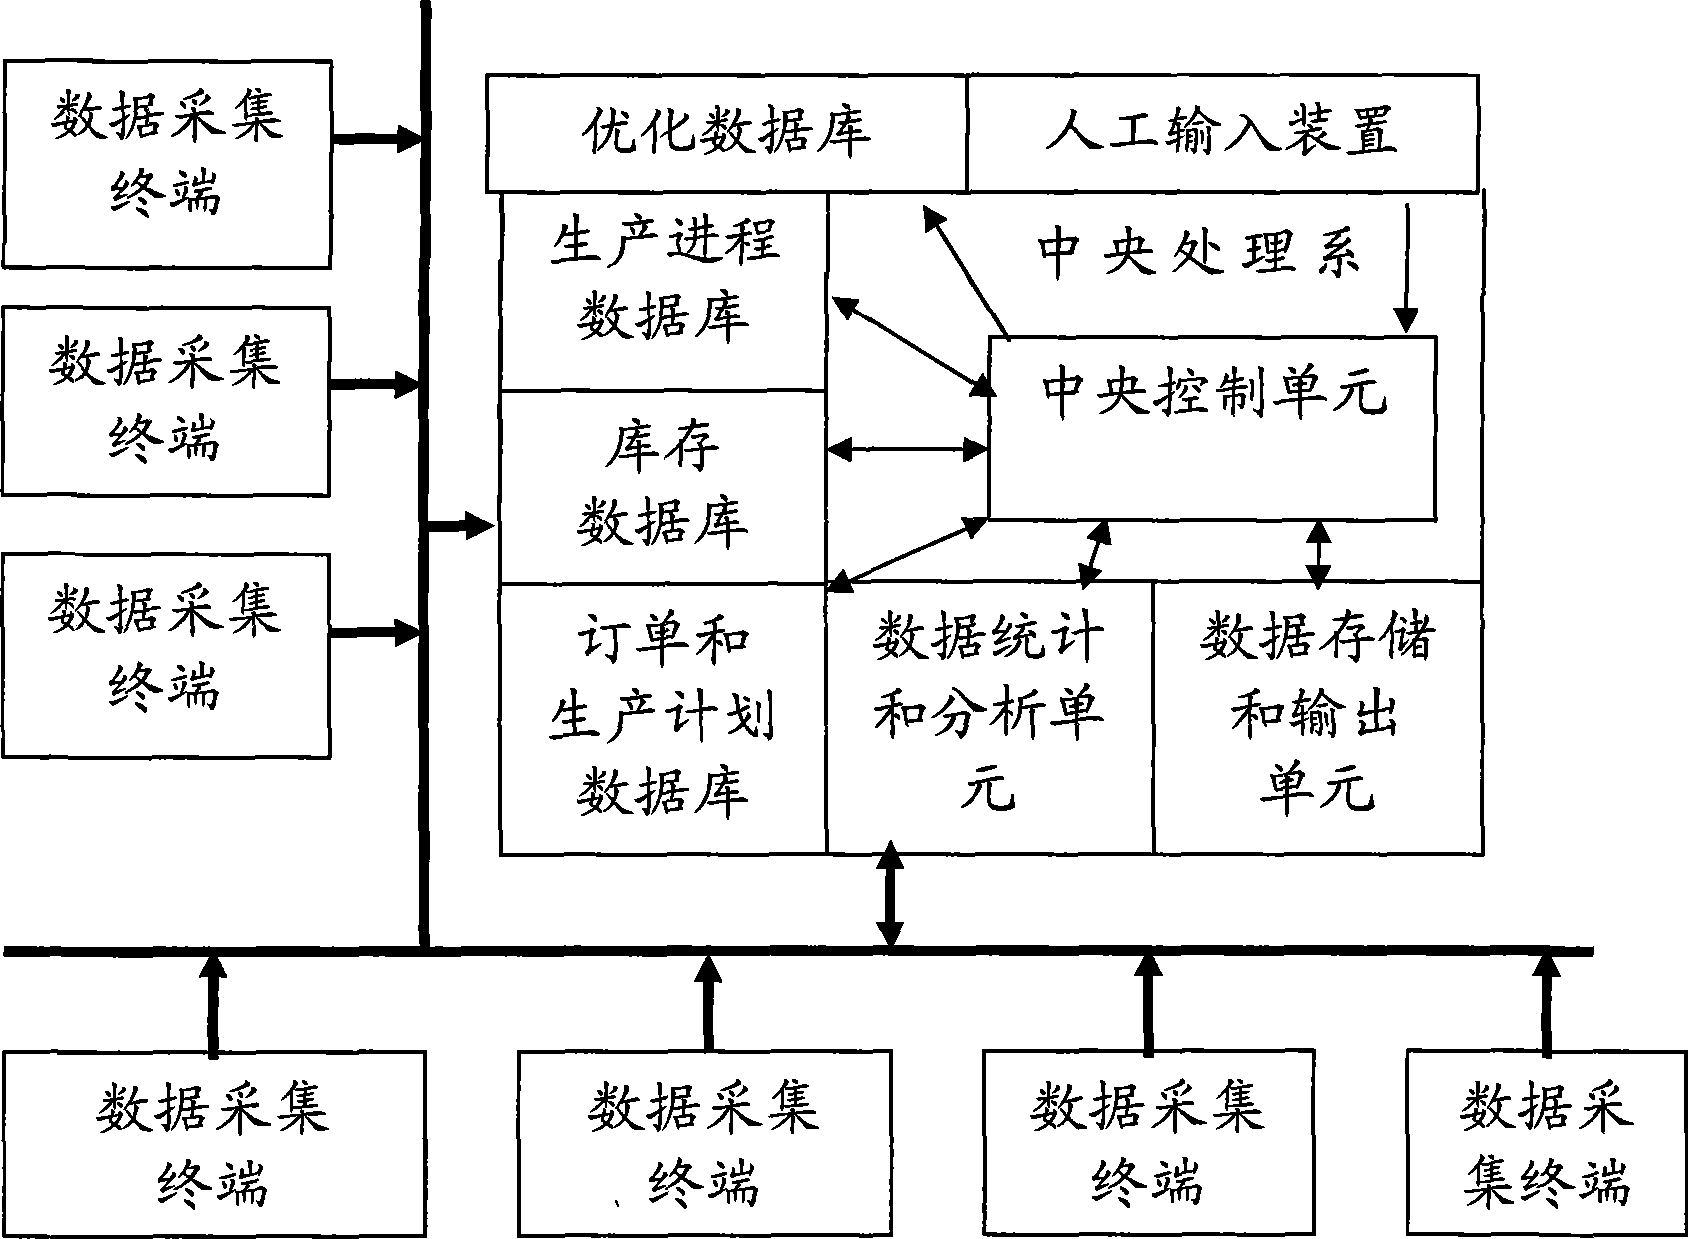 Production enterprise computer management system